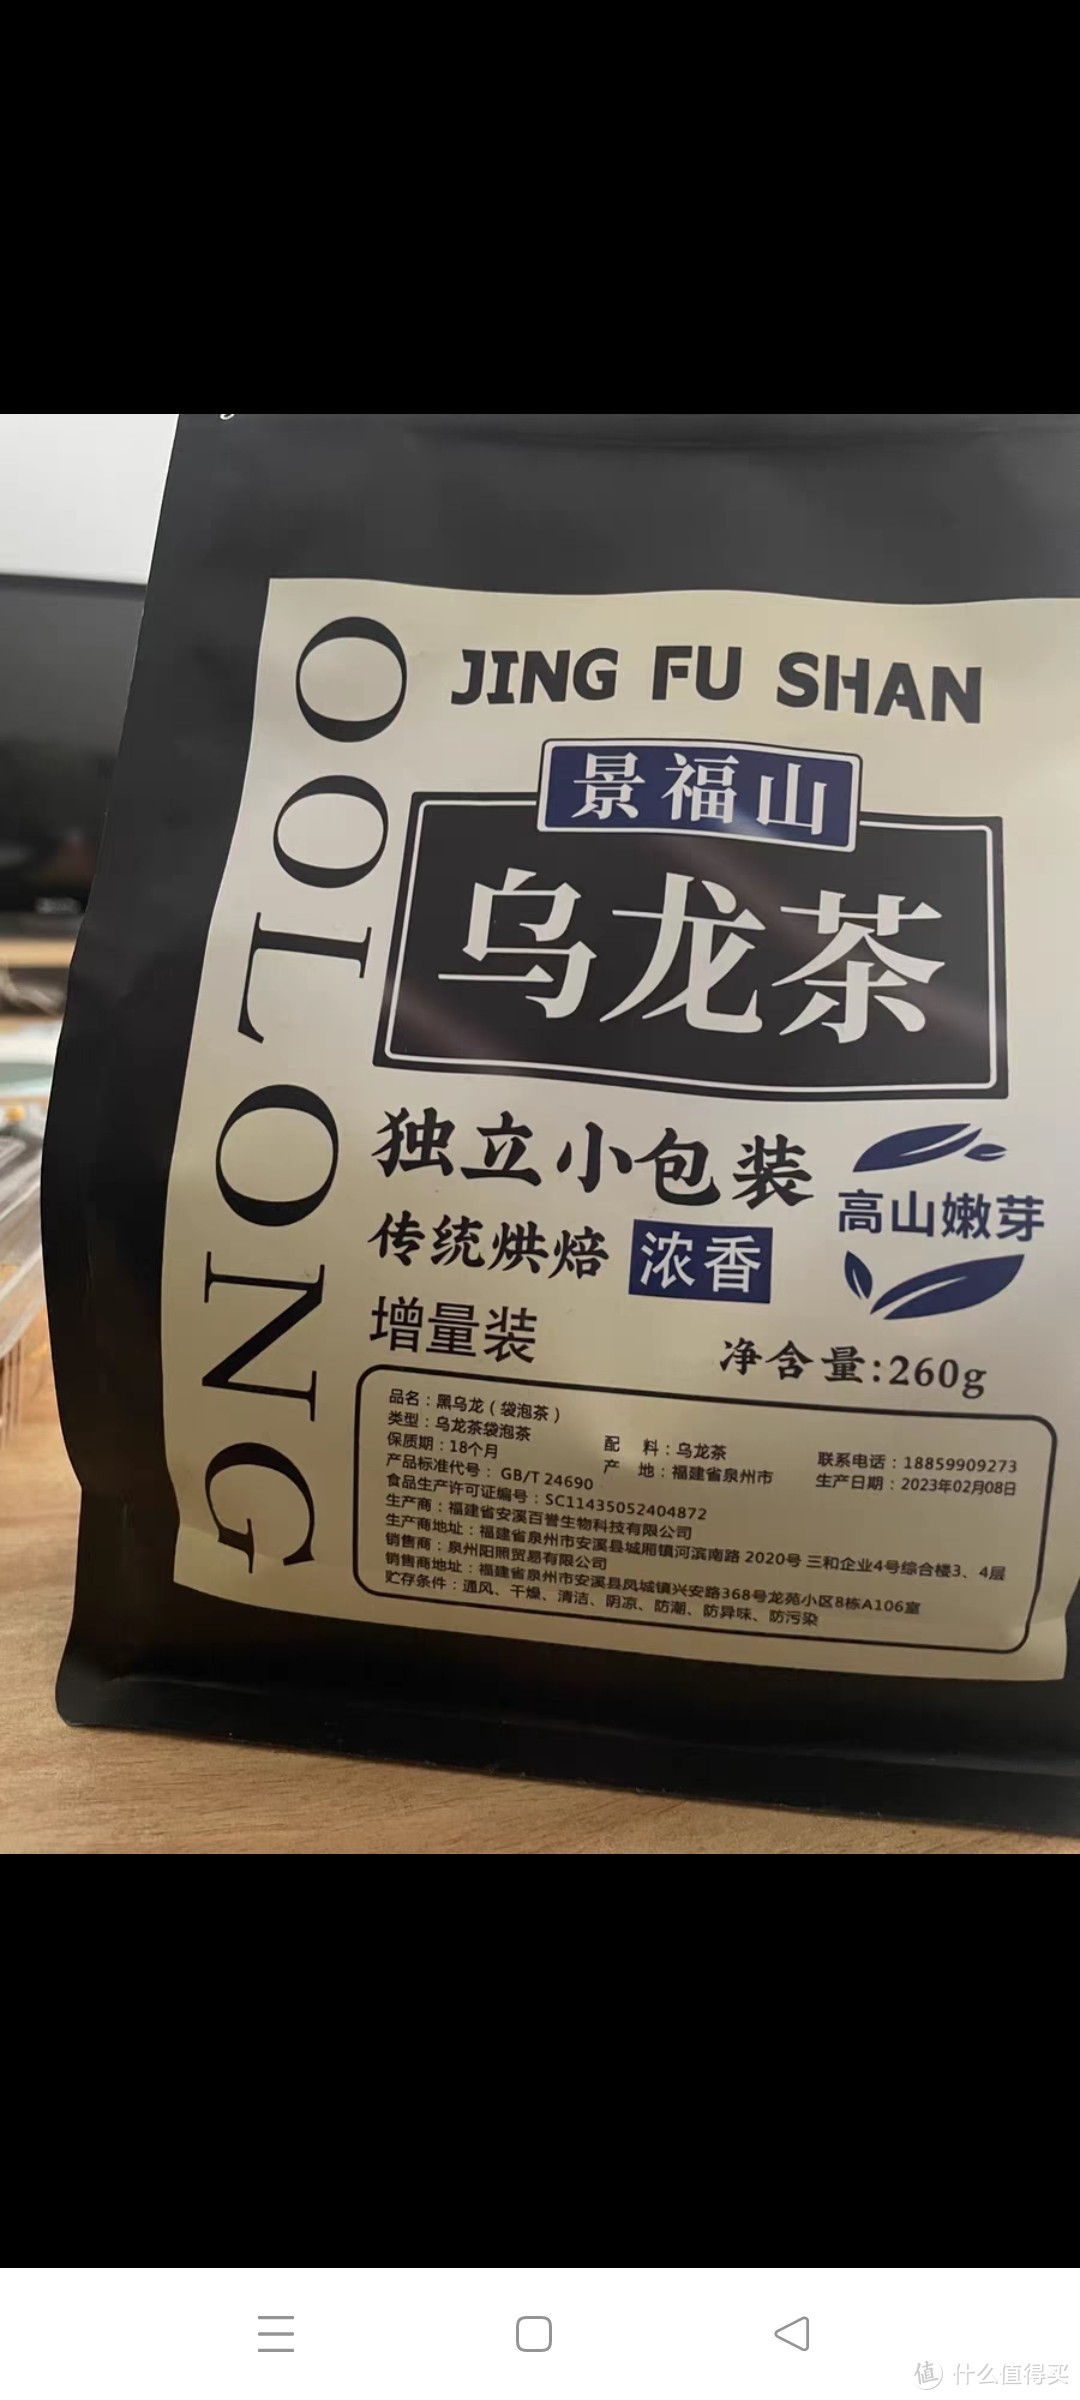 景福山黑乌龙茶油切茶多酚高浓度木炭技法独立小包装浓香乌龙茶叶